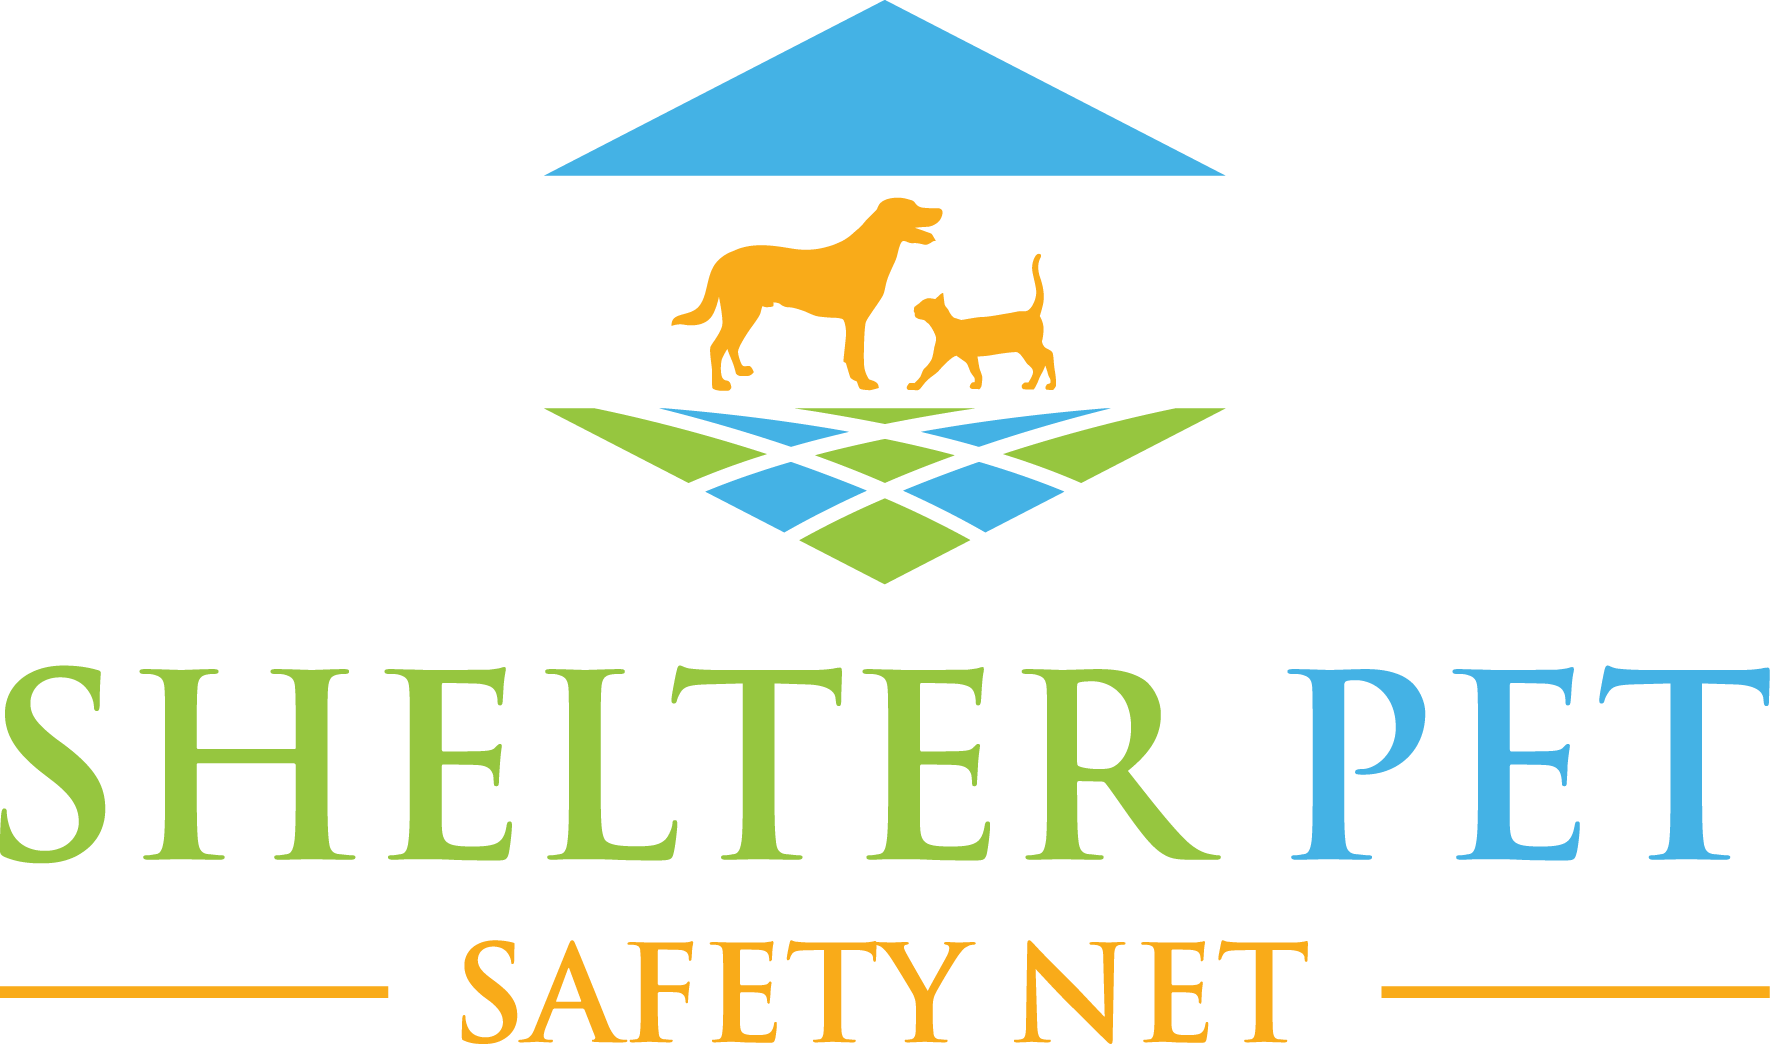 Shelter Pet Safety Net